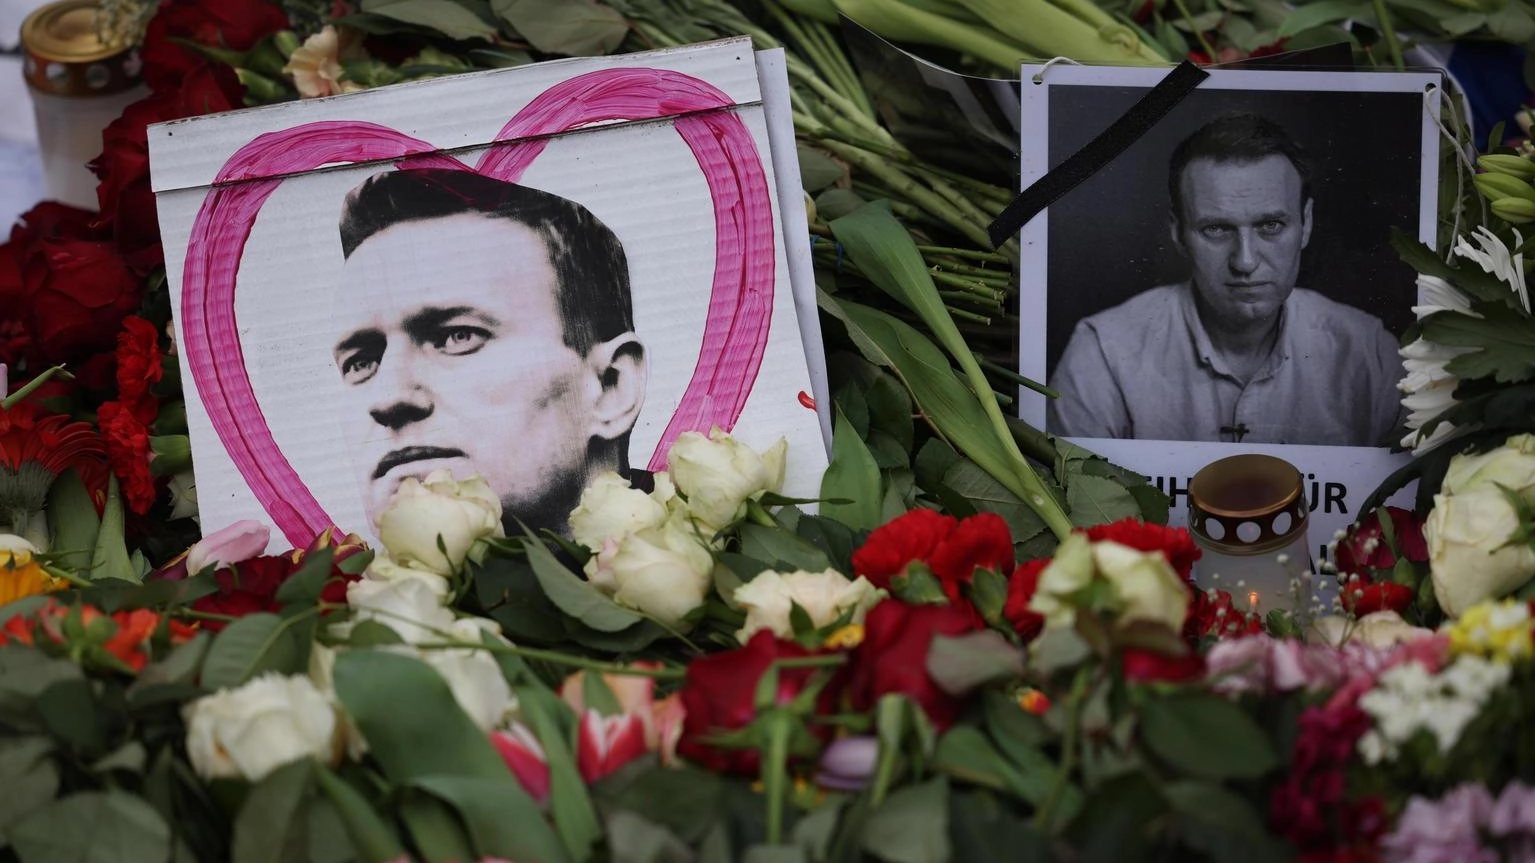 A Milano una dozzina di persone che stavano deponendo fiori per il dissidente russo morto sono state identificate dalla Digos. Polemiche contro la Lega alla fiaccolata bipartisan a Roma